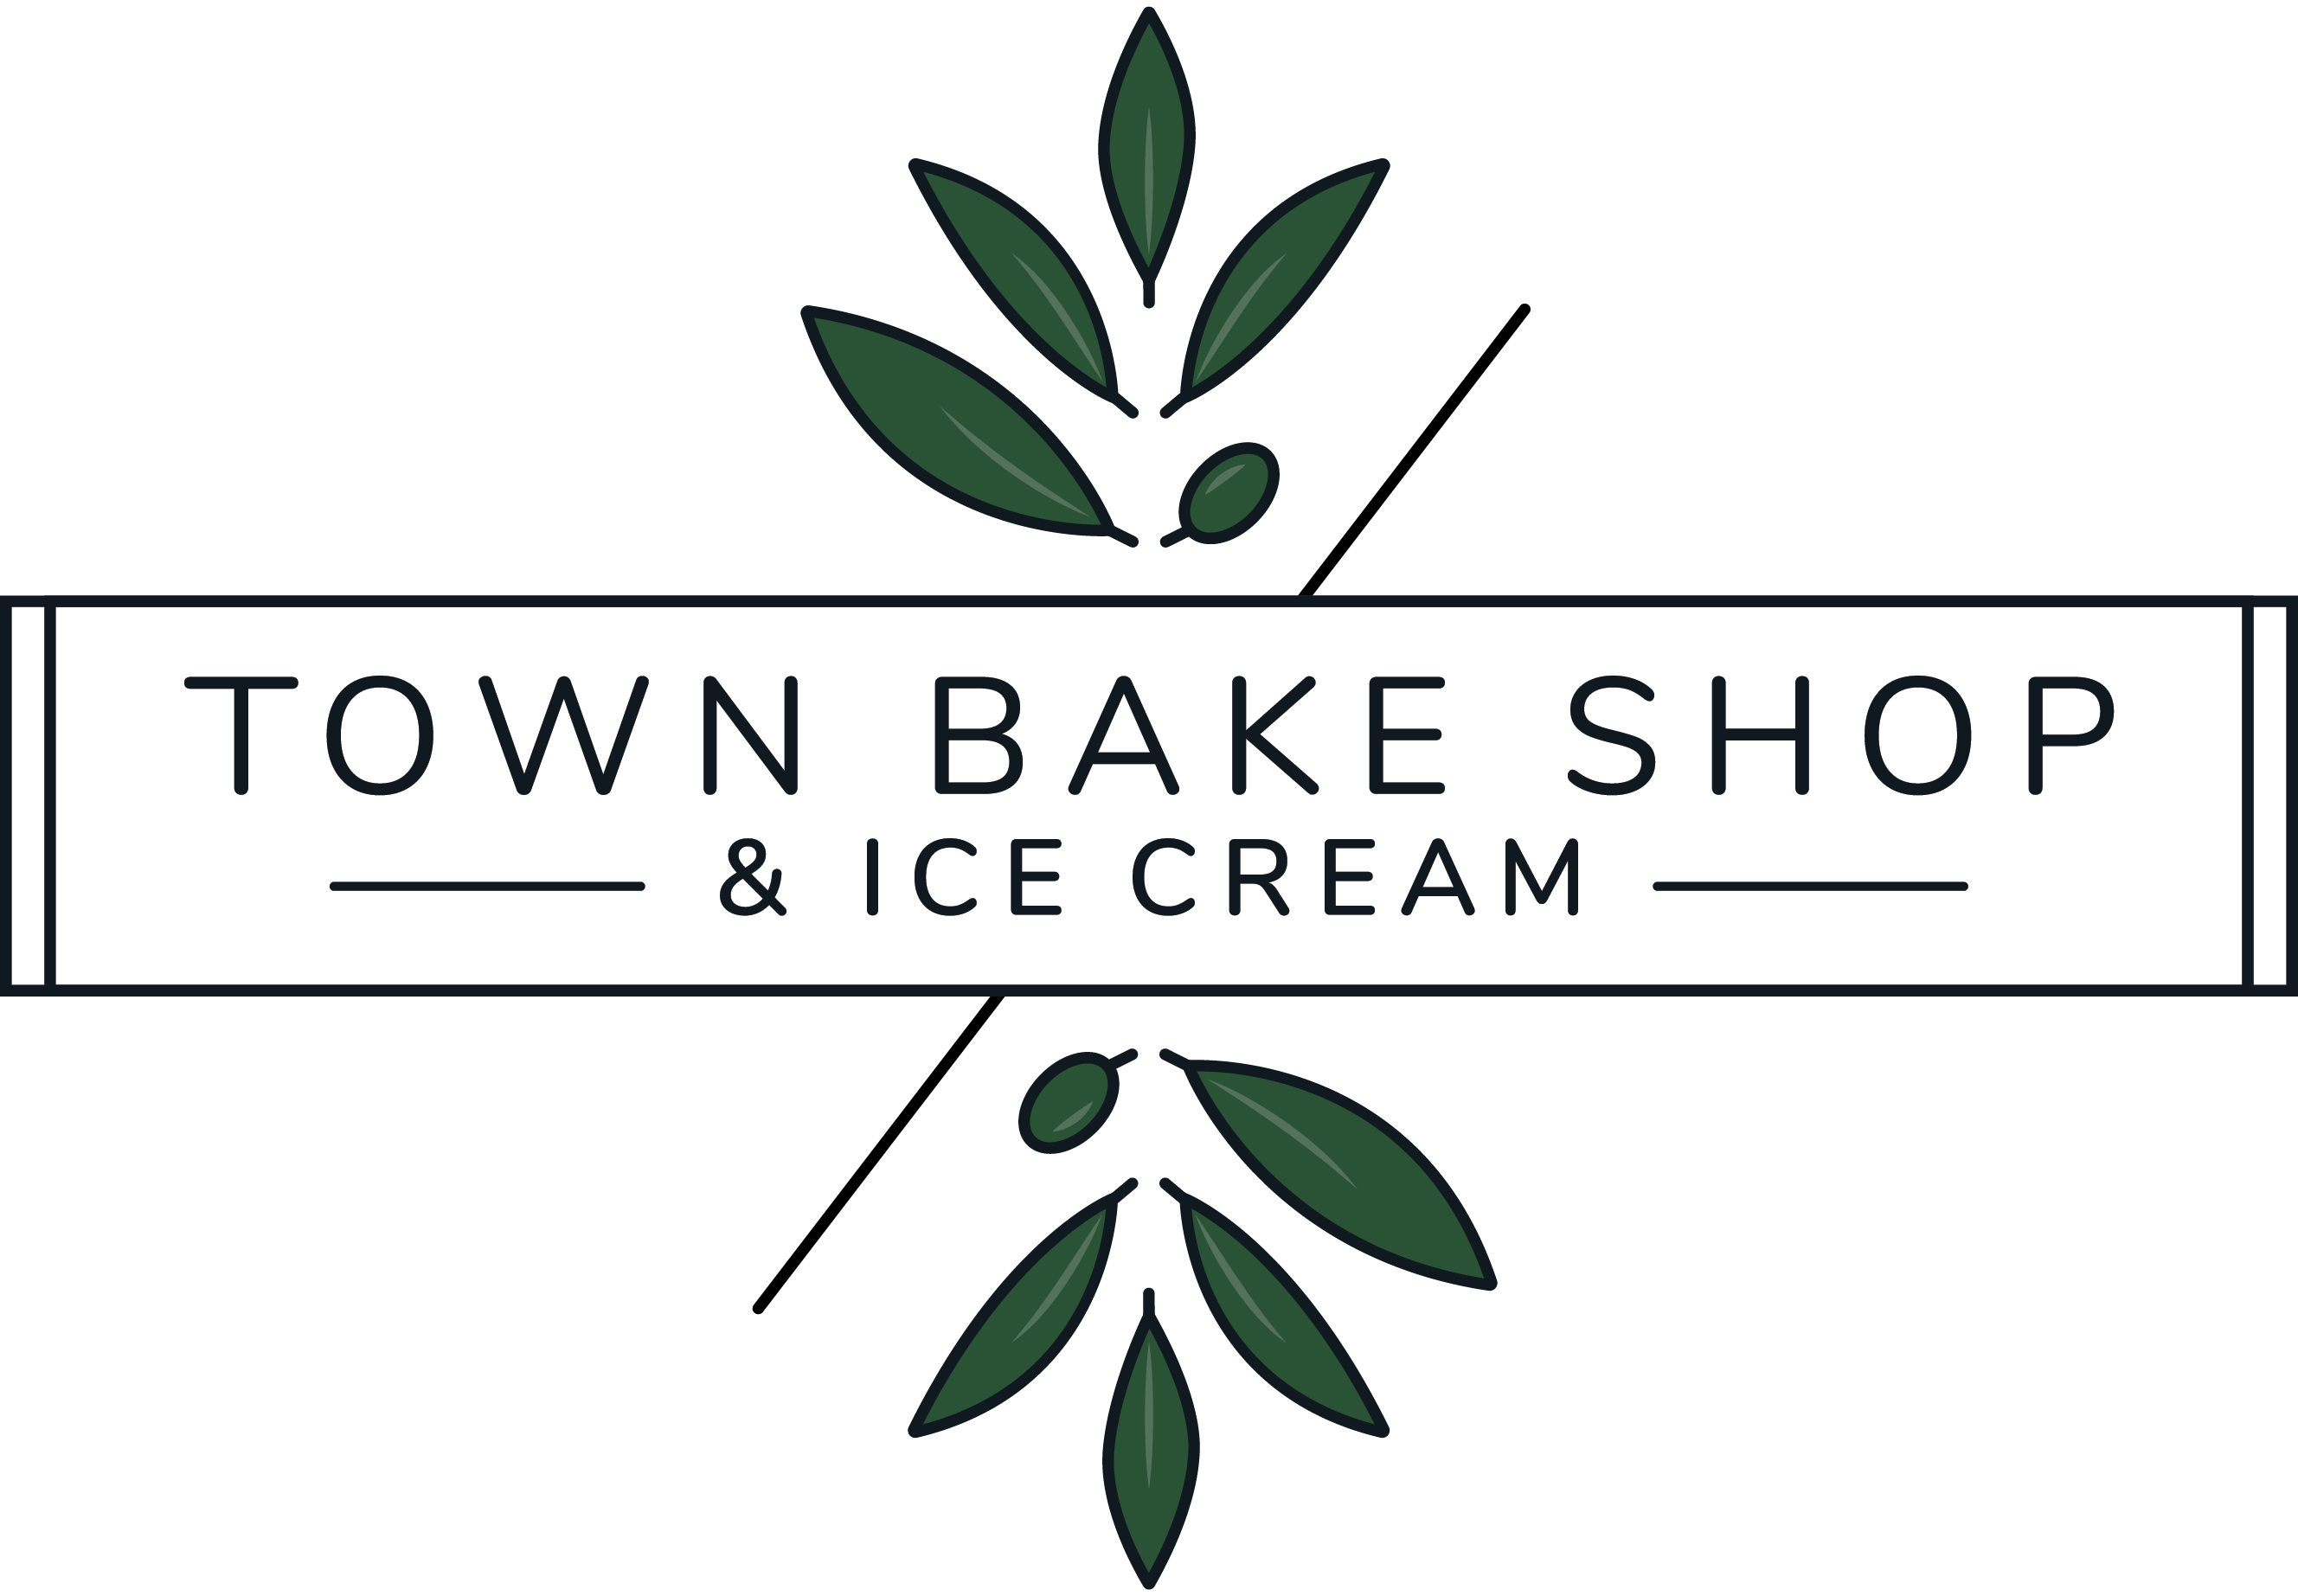 Town Bake Shop & Ice Cream